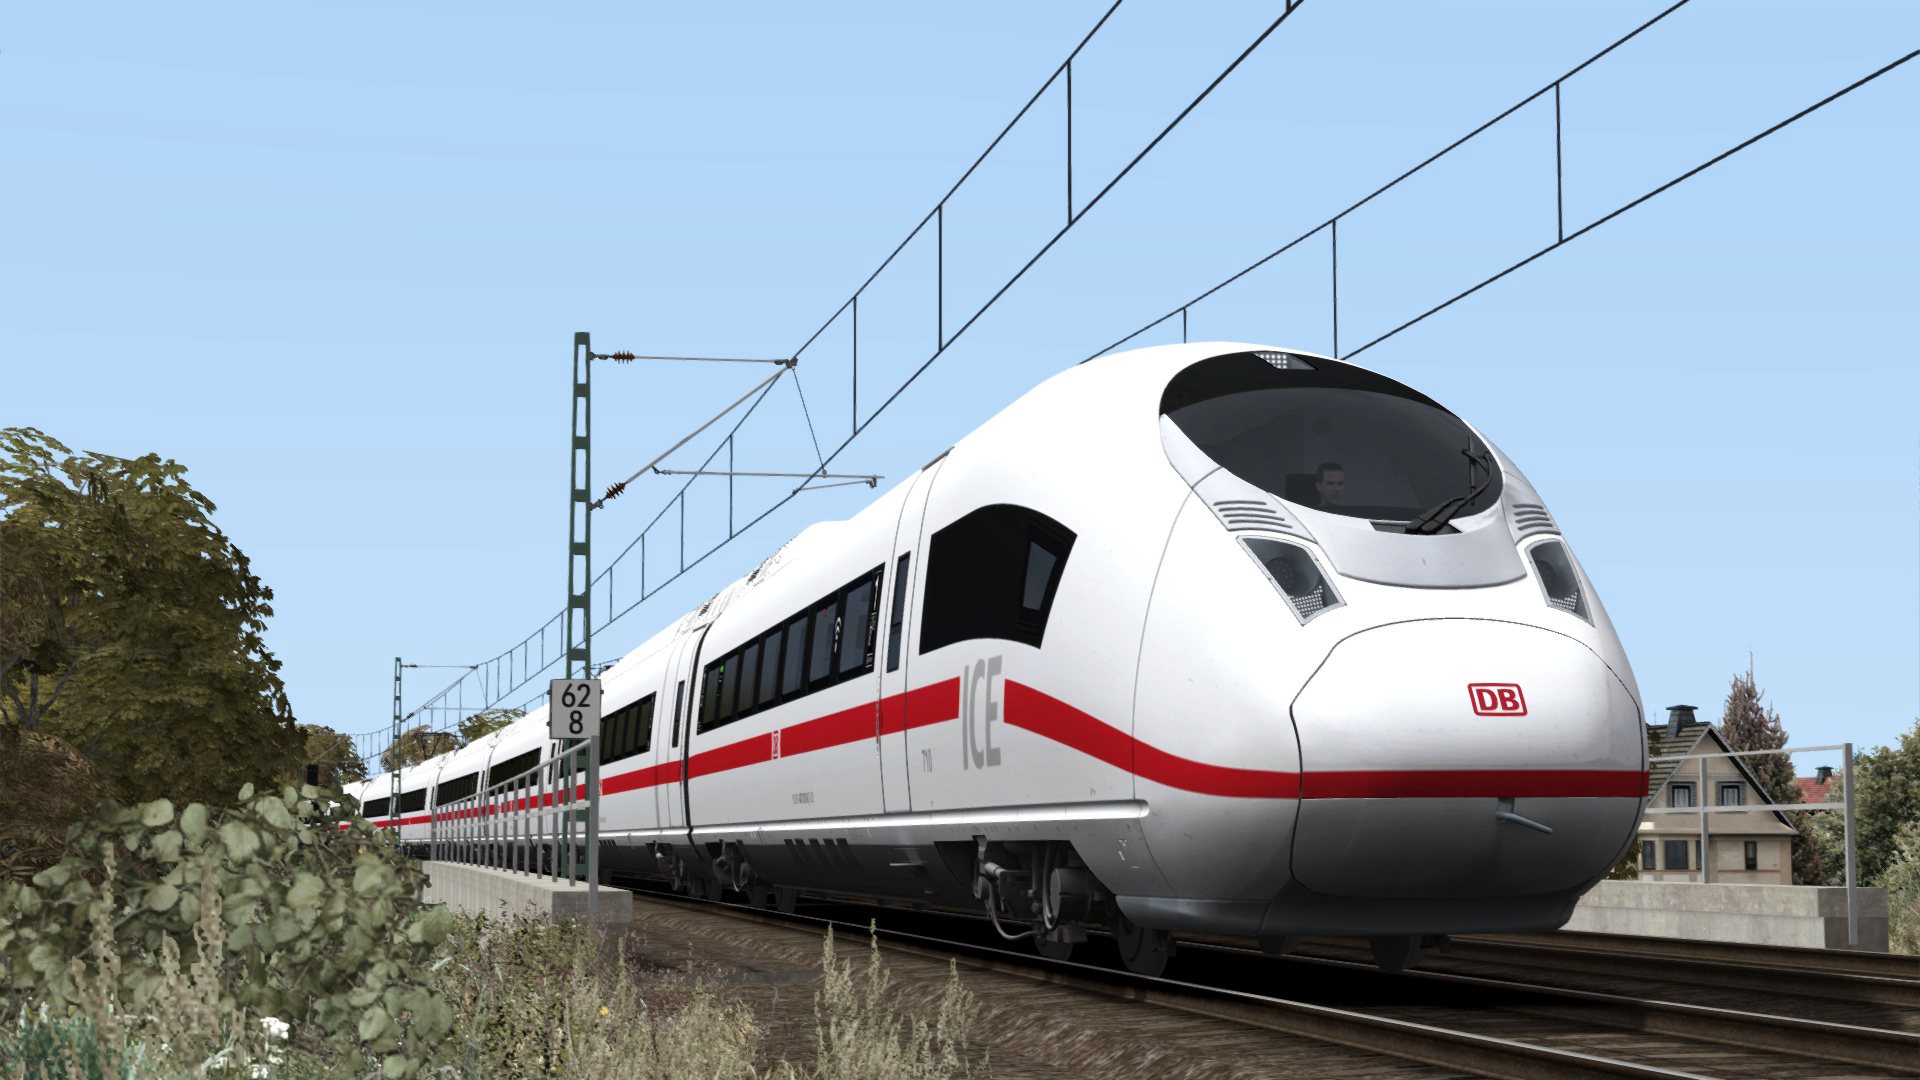 Train Simulator - DB BR 407 ‘New ICE 3’ EMU Add-On DLC Steam CD Key 3.82 USD